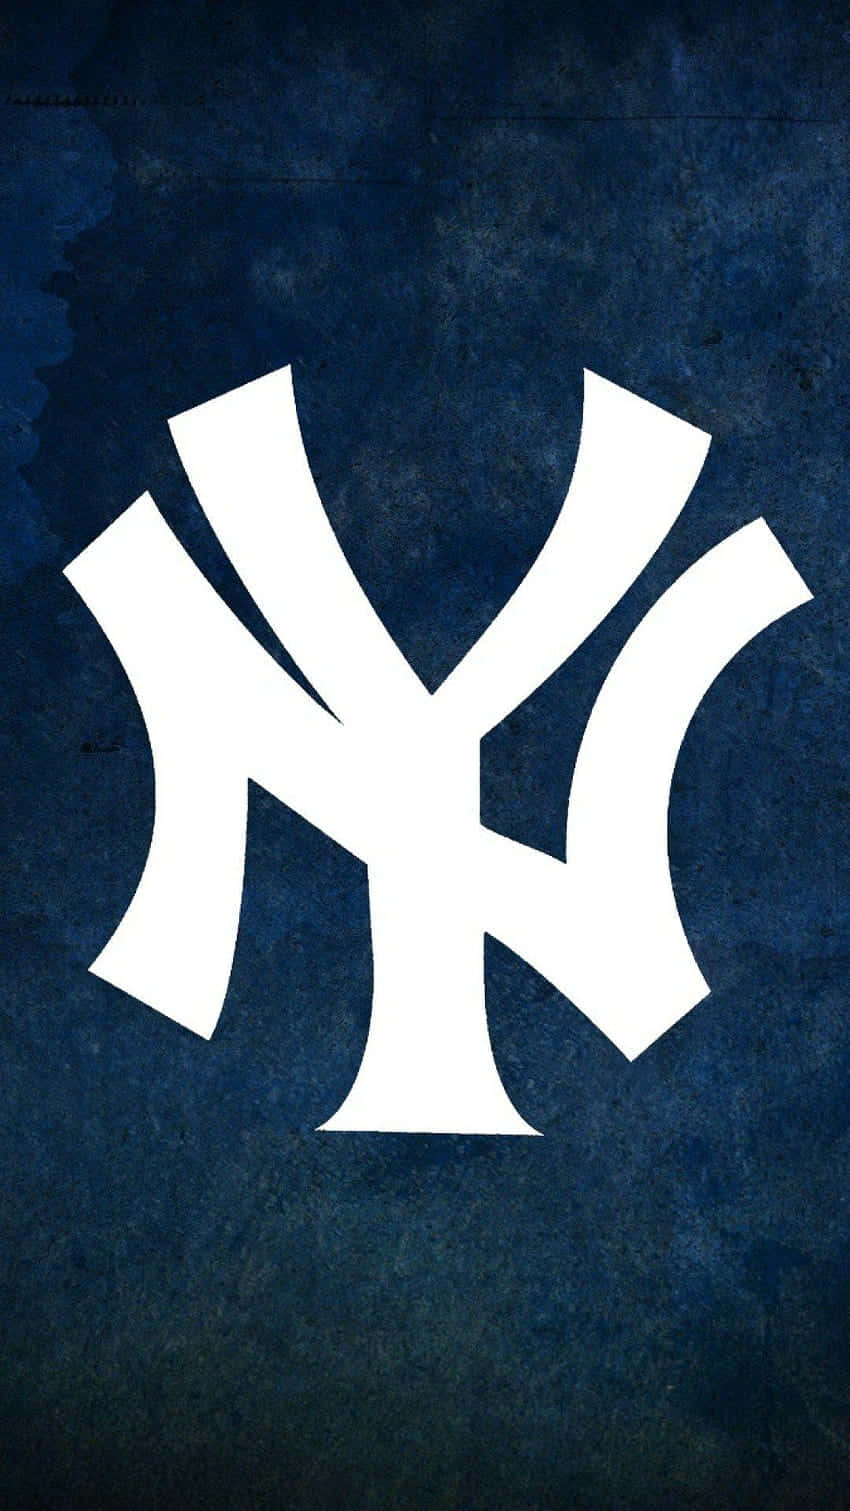 Holdir Dieses New York Yankees Iphone-hintergrundbild, Um Deinen Teamstolz Zu Zeigen! Wallpaper